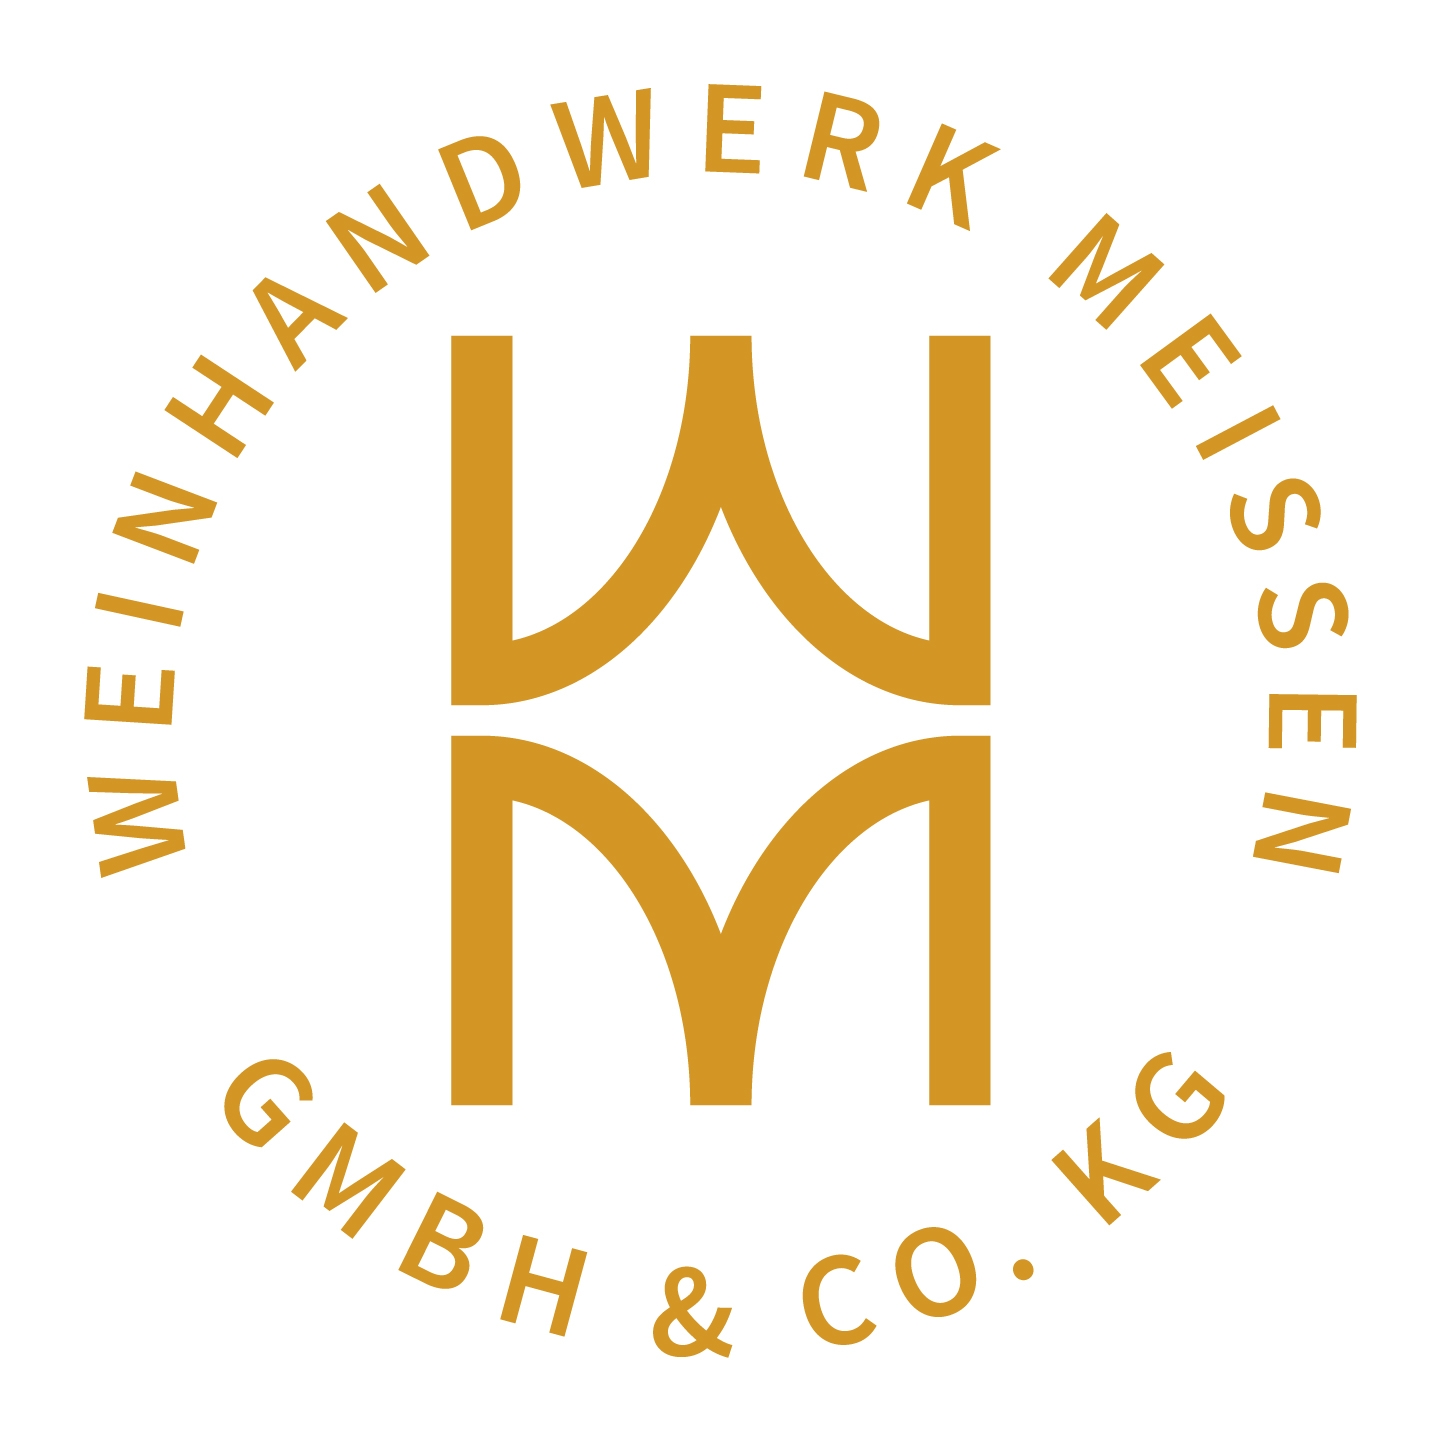 Weinhandwerk Meissen GmbH 6 Co. KG